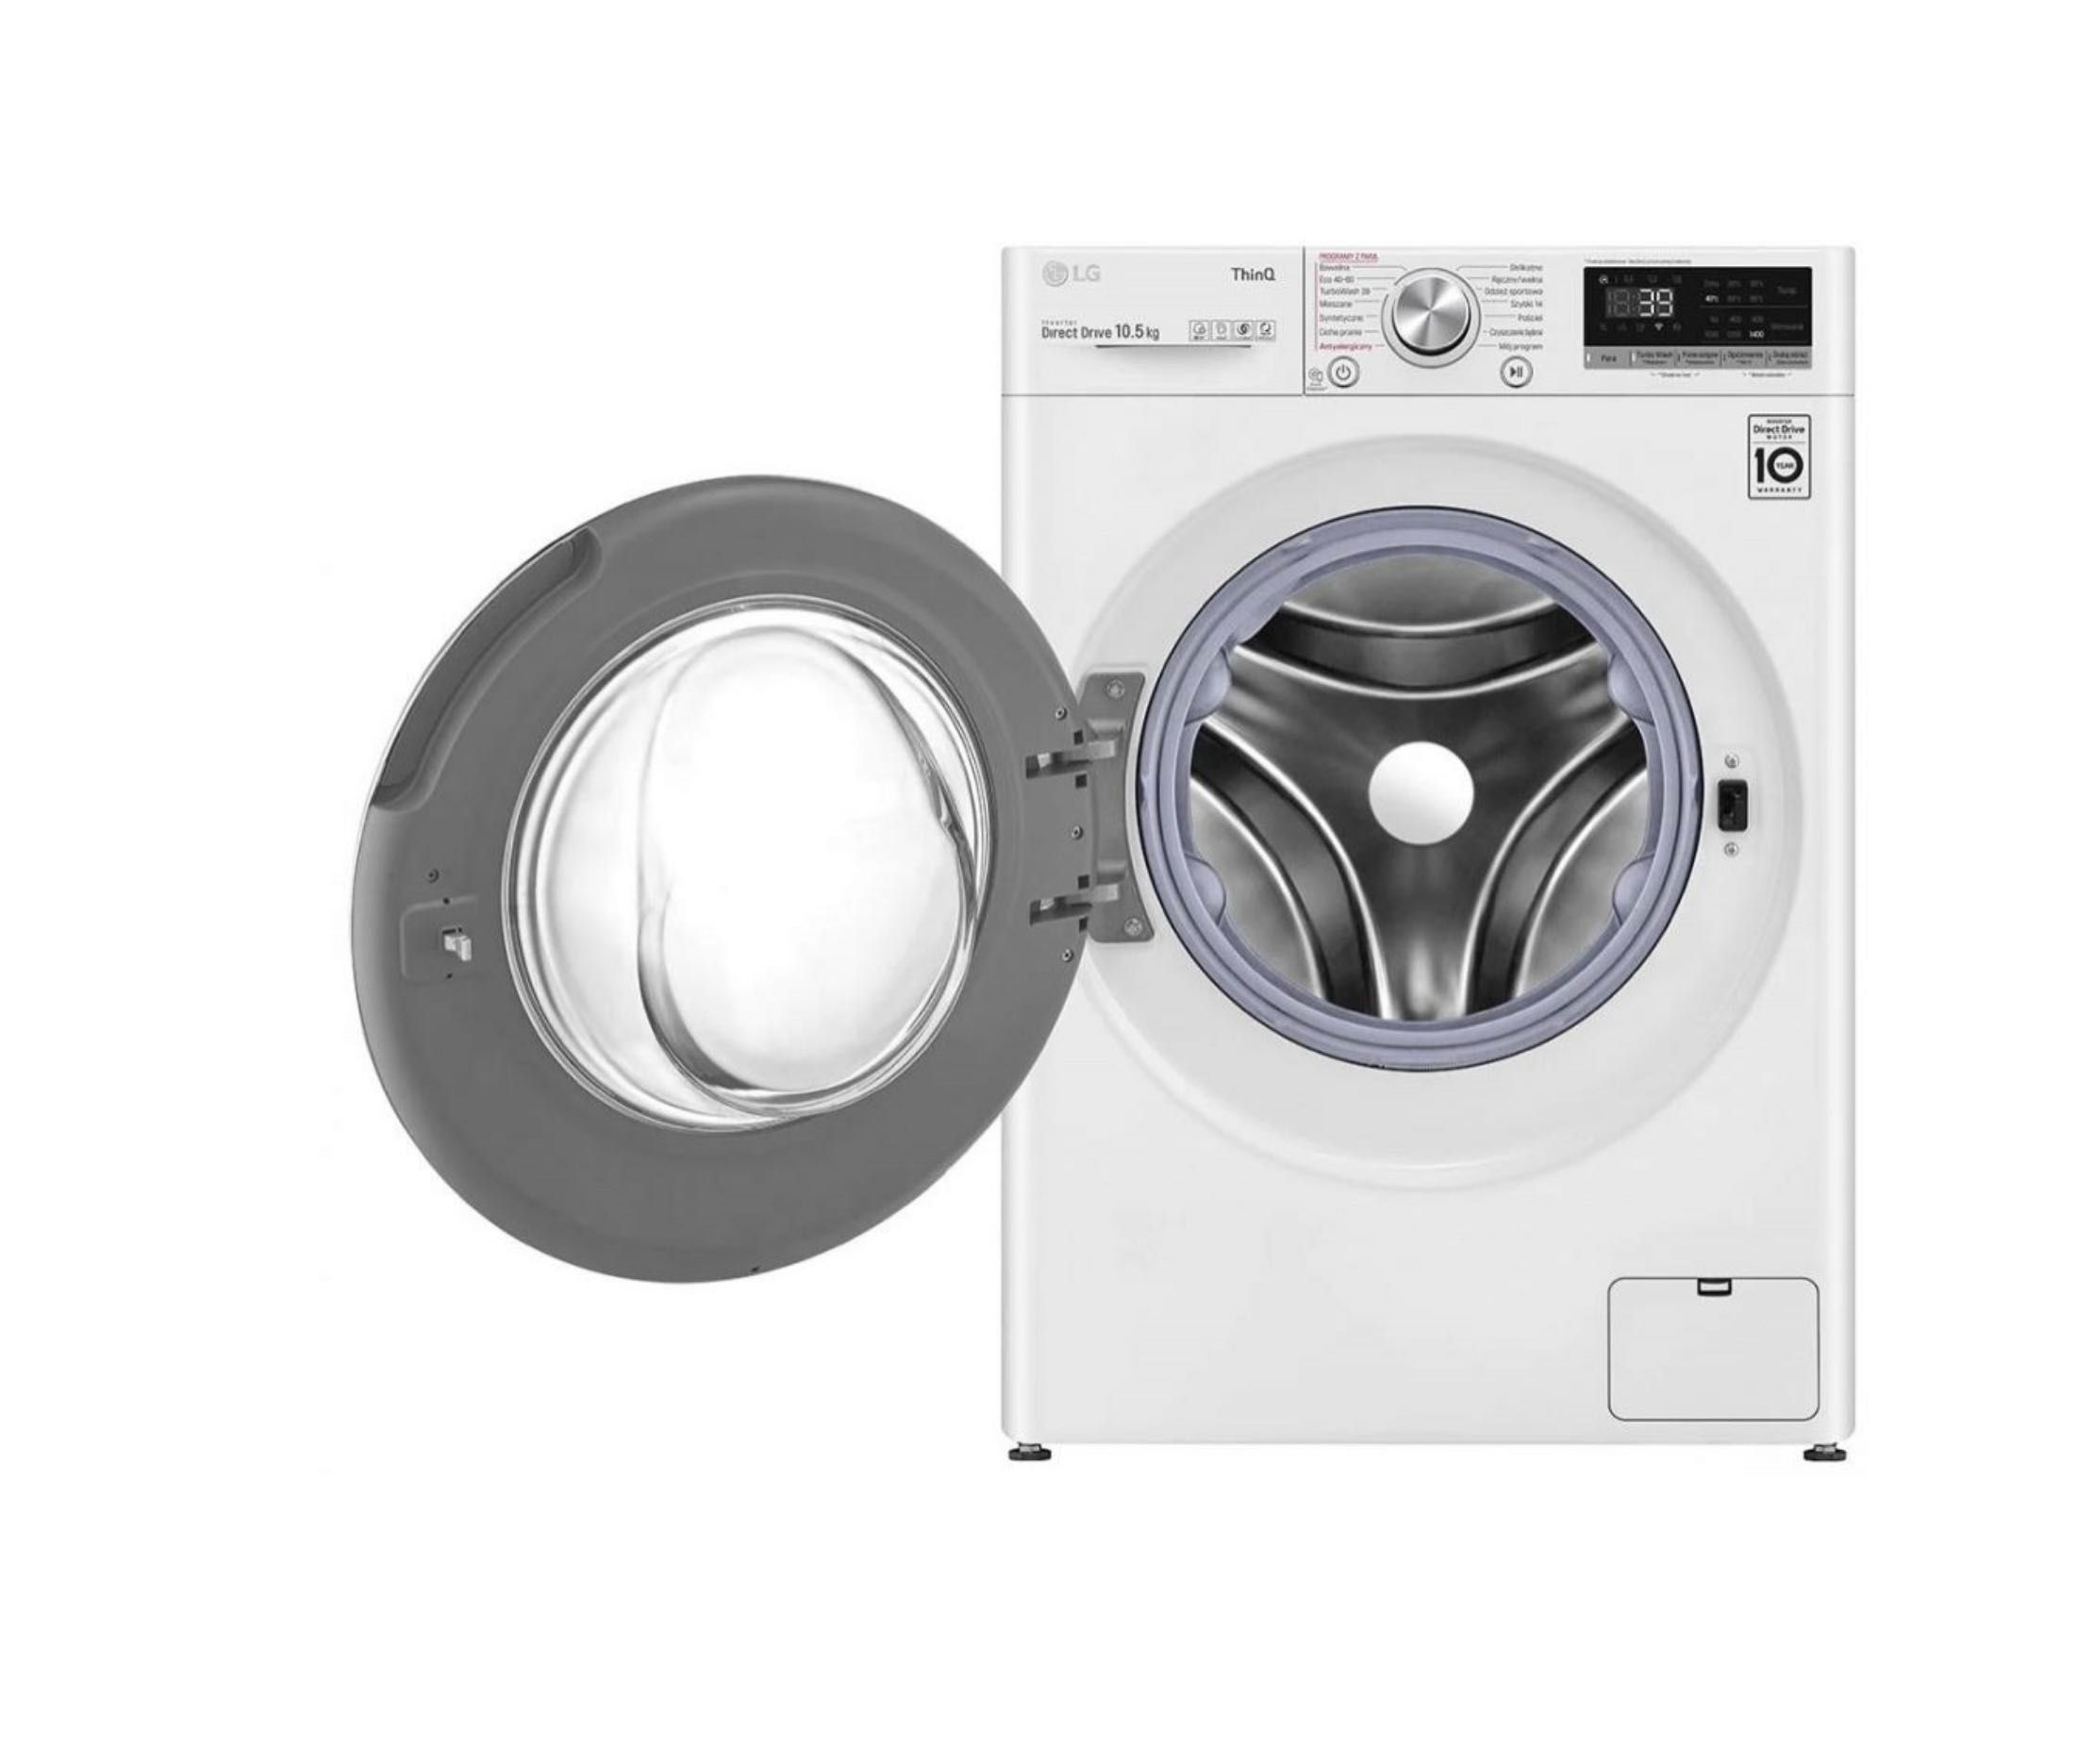 Пральна машина LG F4WV710S1E пралка стиральная машинка елджі 10,5 кг